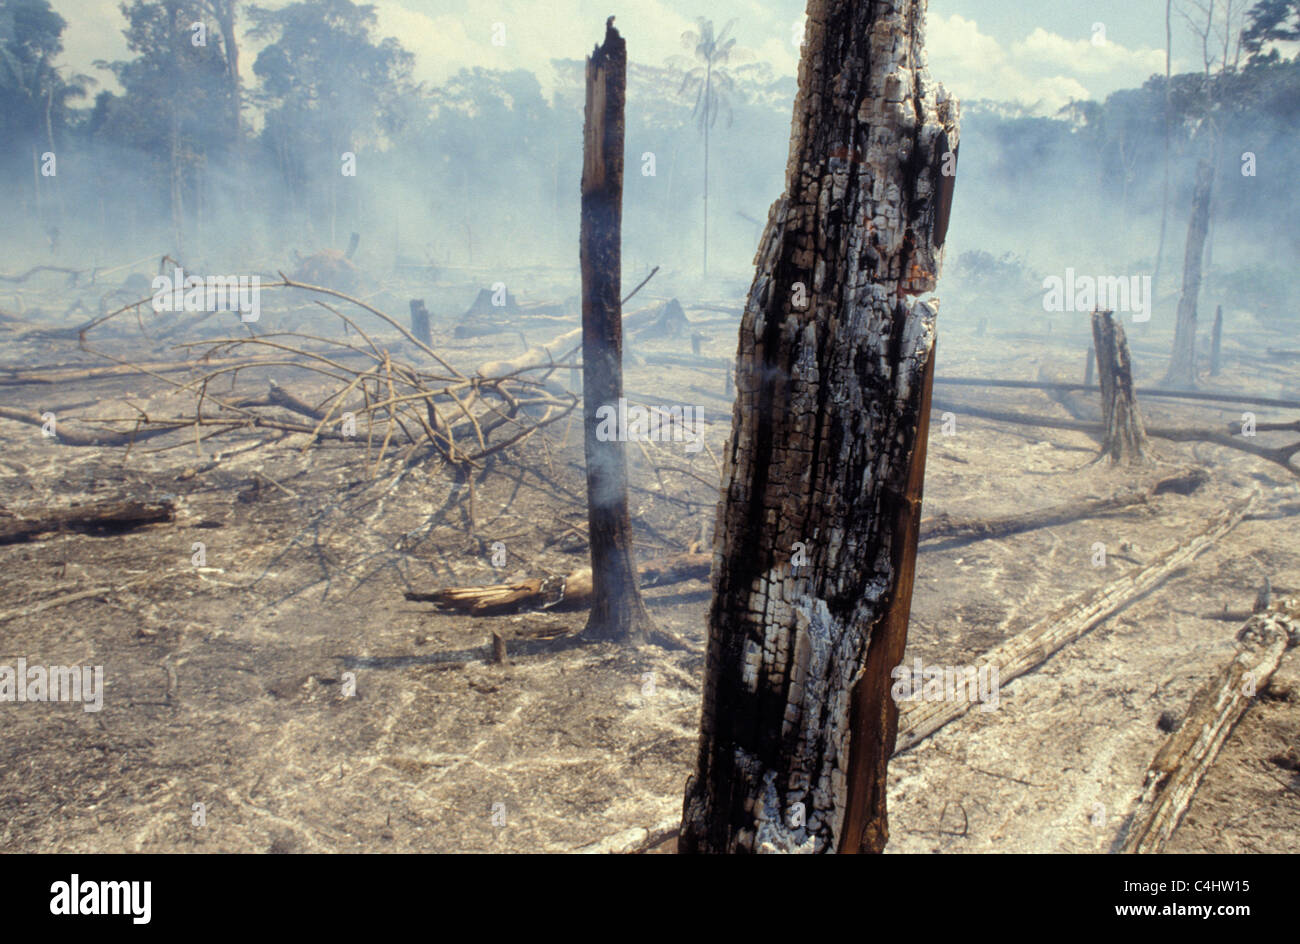 Amazonas-Regenwald brennen. Entwaldung. Brazilien. Verbrannte Bäume, ökologische Ungleichgewicht, Rodung. Stockfoto